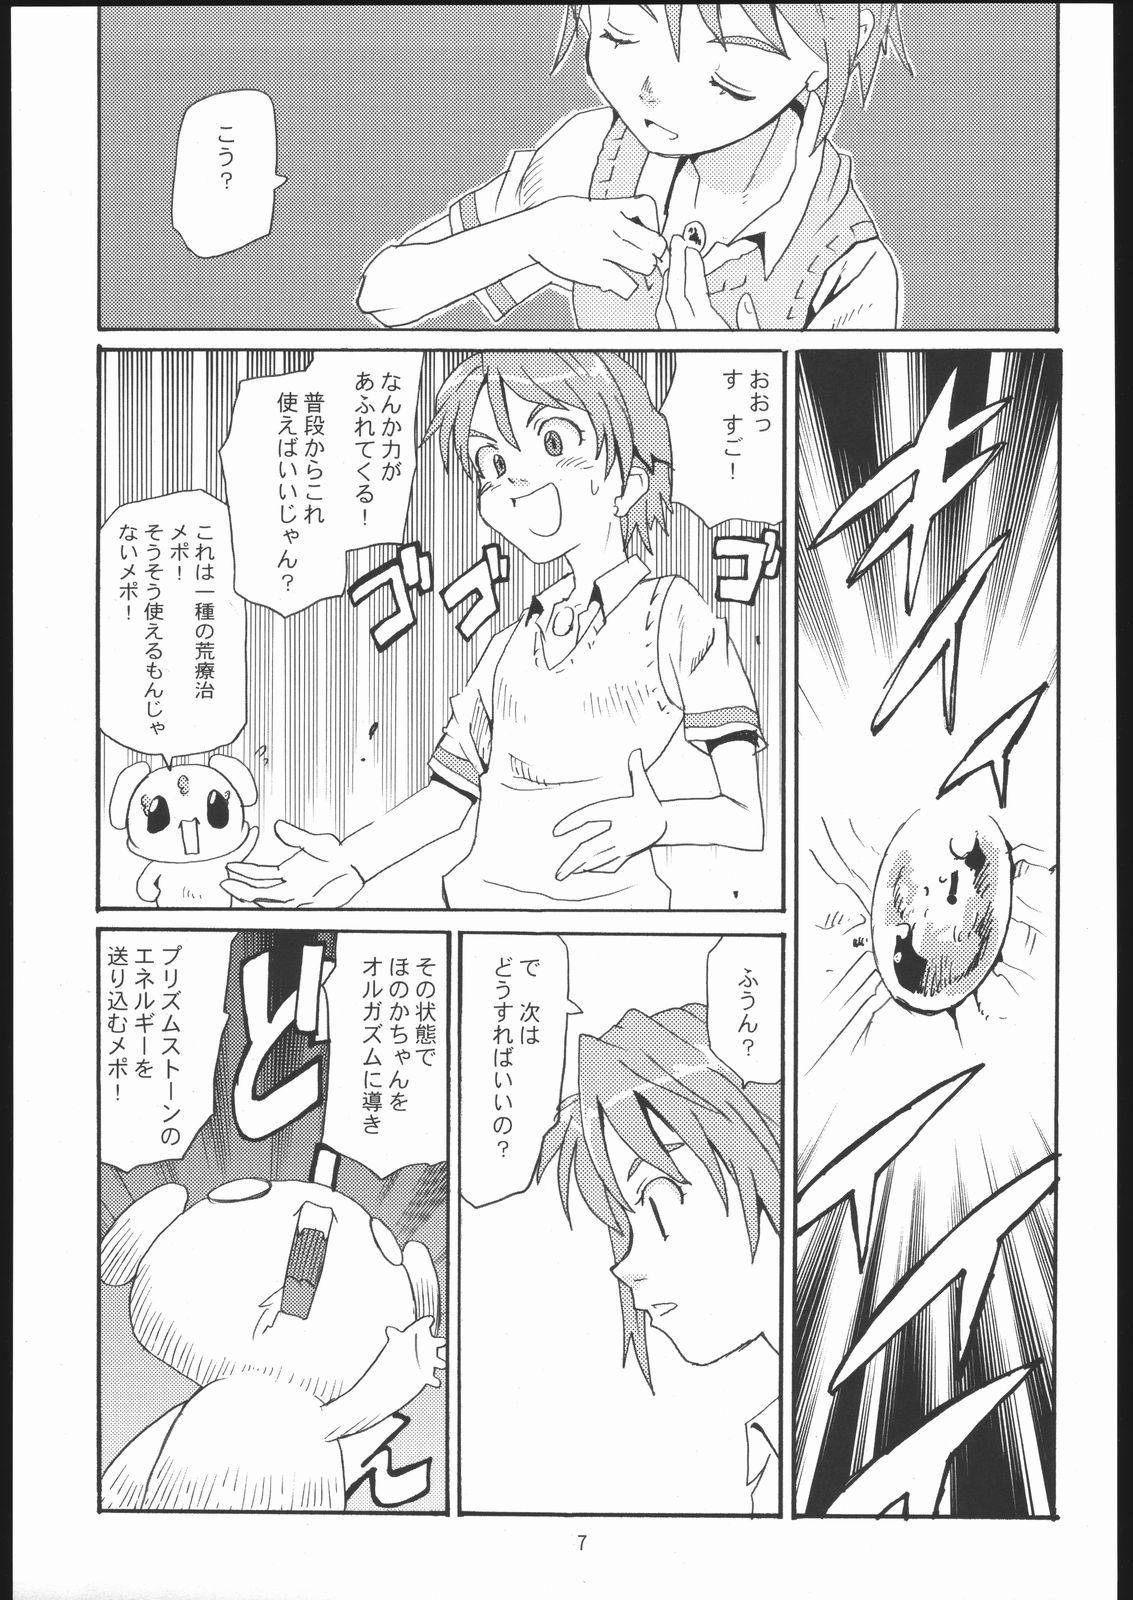 Real Couple Cure Cure - Futari wa pretty cure | futari wa precure Rebolando - Page 6